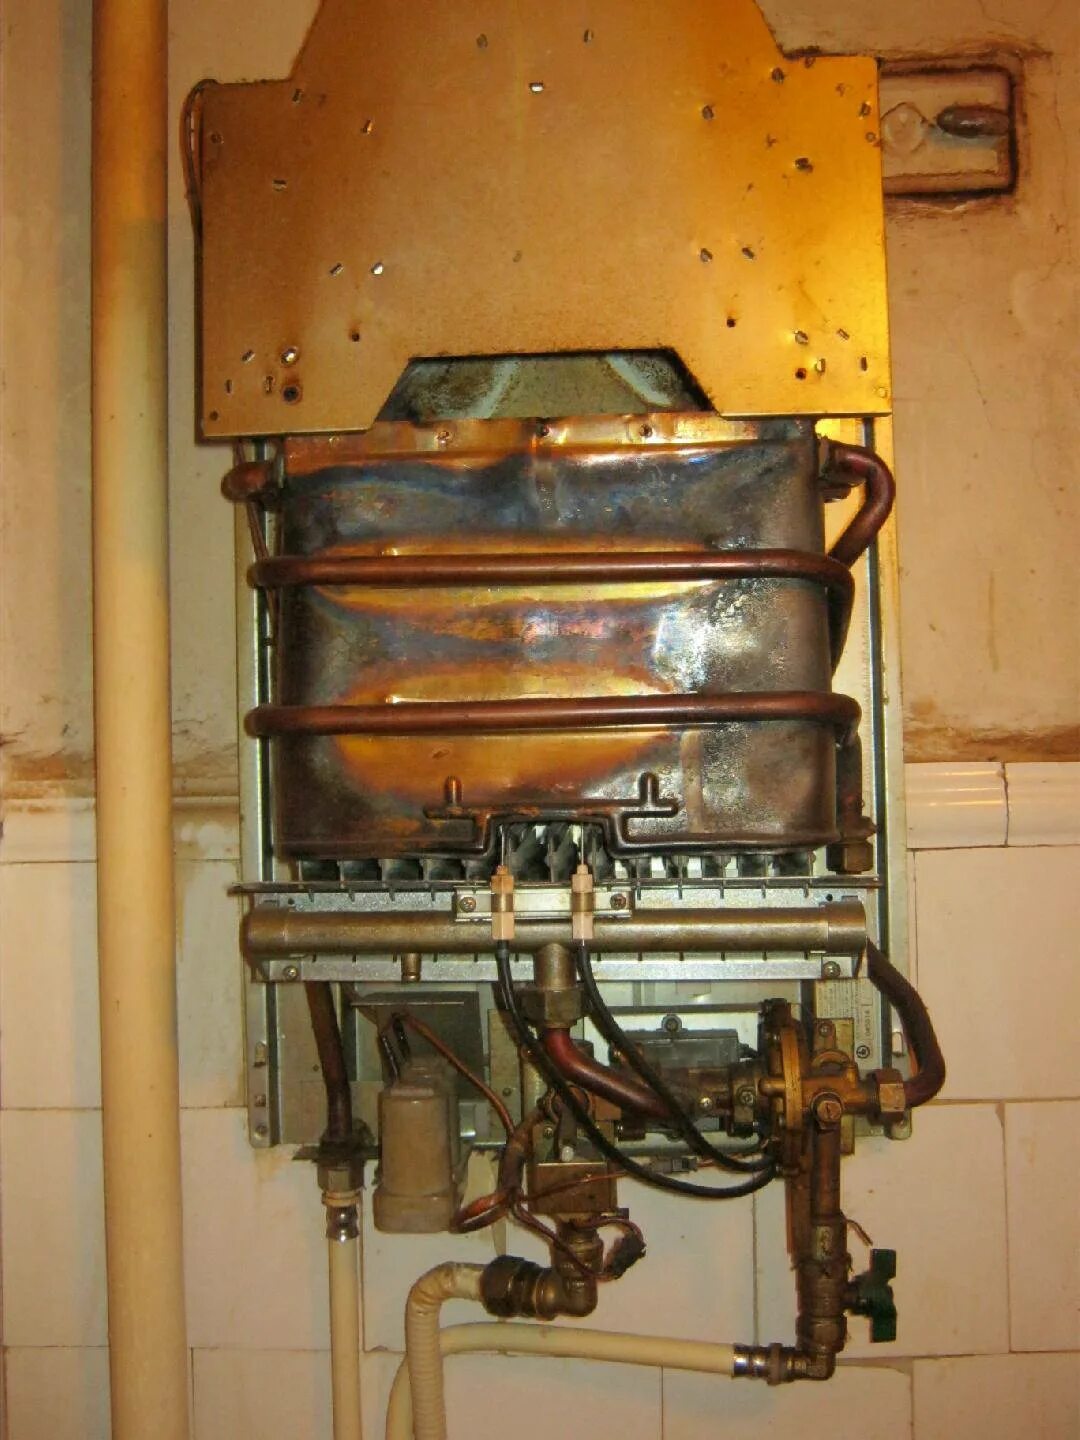 Советская газовая колонка КГИ-56. 5514е колонка газовая. Телефон ремонта газовых колонок